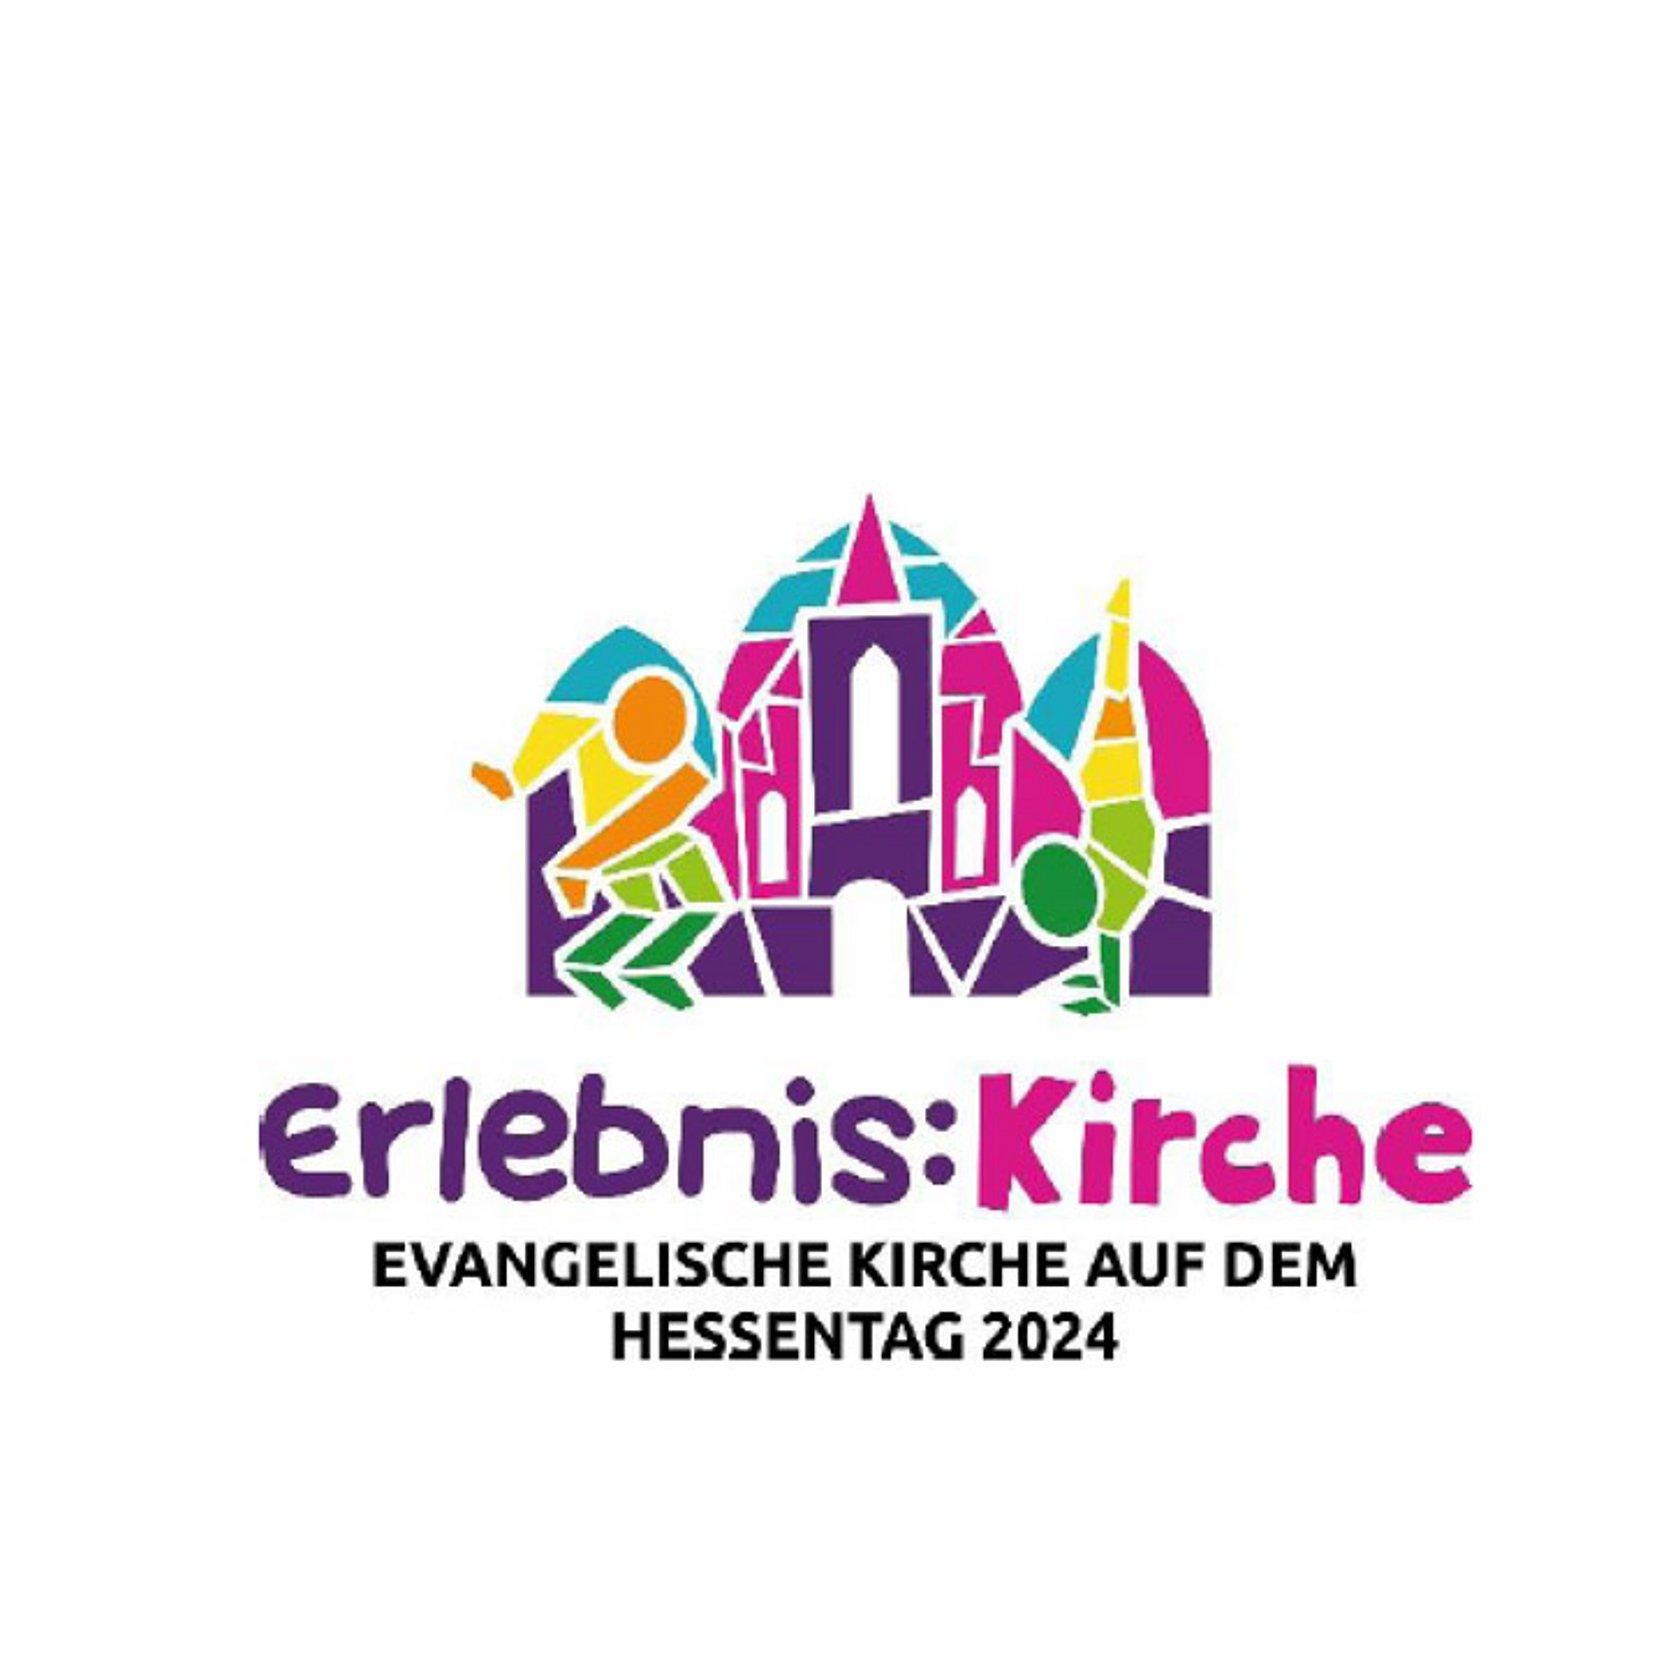 Buntes Logo mit einem stilisierten Menschen, einer Kirche und einem Baum, darunter der Schriftzug: Evangelische Kirche auf dem Hessentag 2024